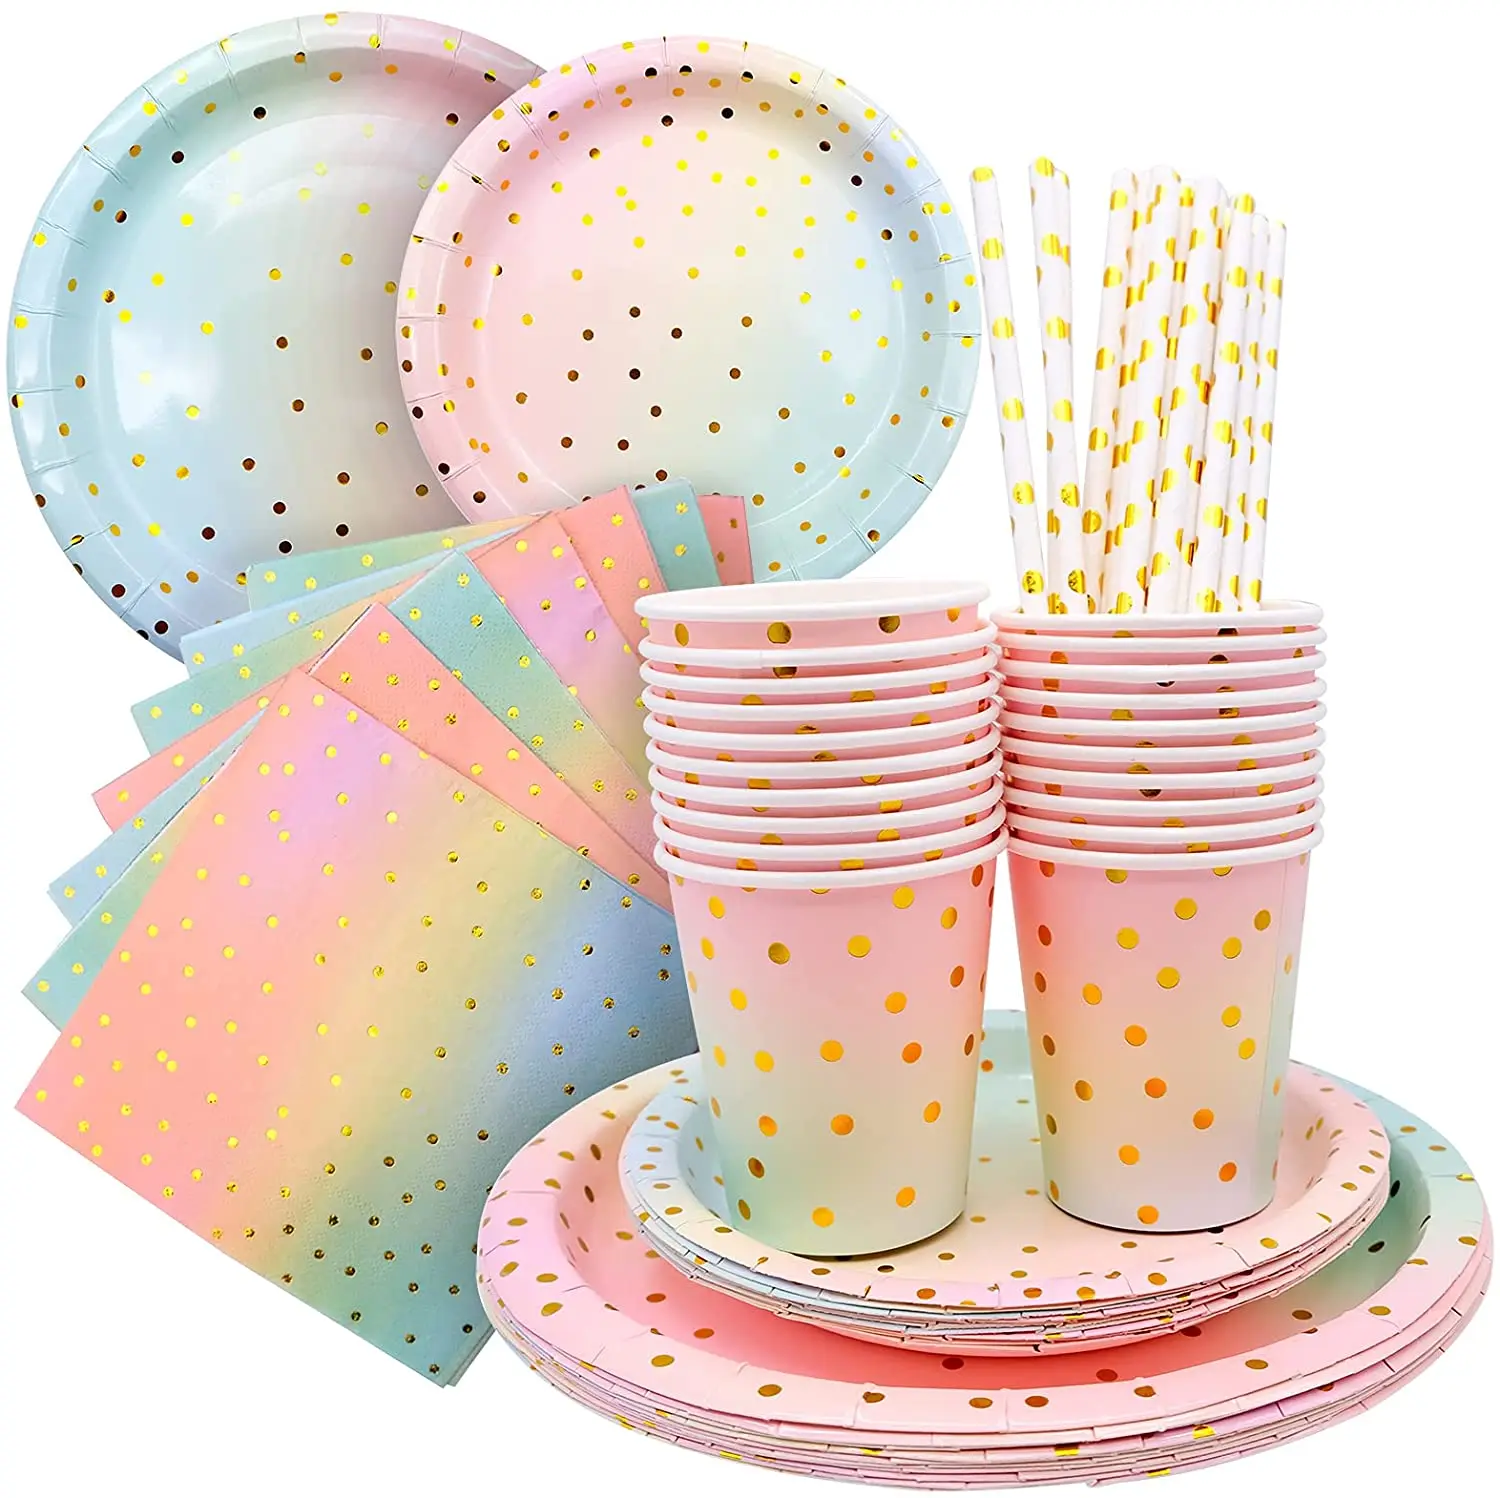 

Бумажная посуда в золотистый горошек-столовые приборы, чашки, салфетки, соломинки для вечеринки в честь Дня Рождения, свадьбы, свадебного то...